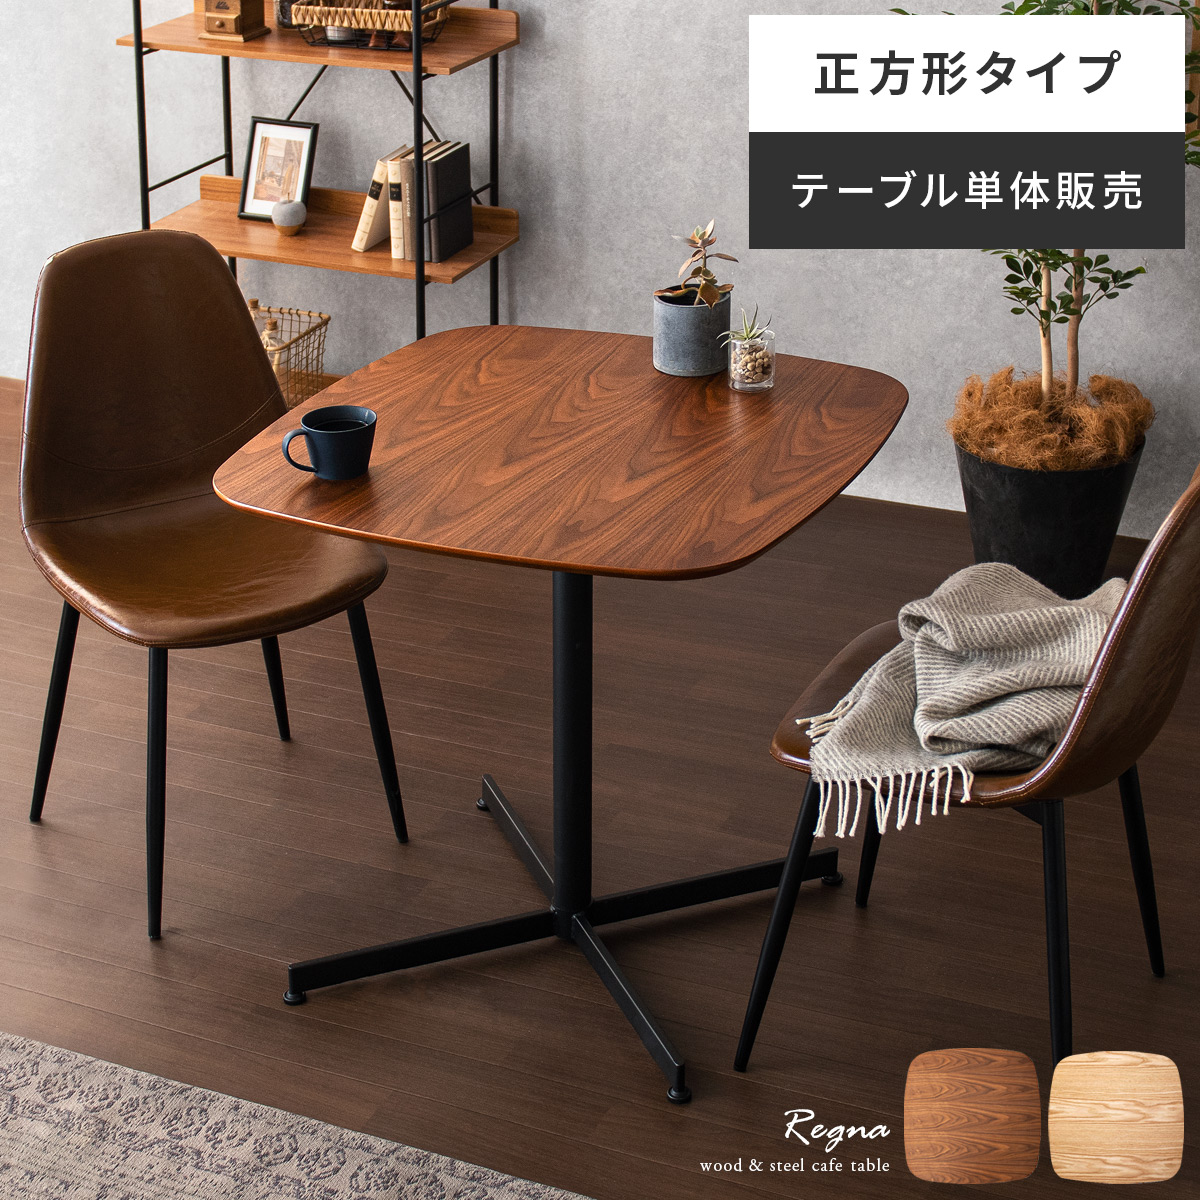 カフェテーブル Regna( レグナ) 正方形タイプ 75×75cm 【公式】 エア・リゾーム インテリア・家具通販